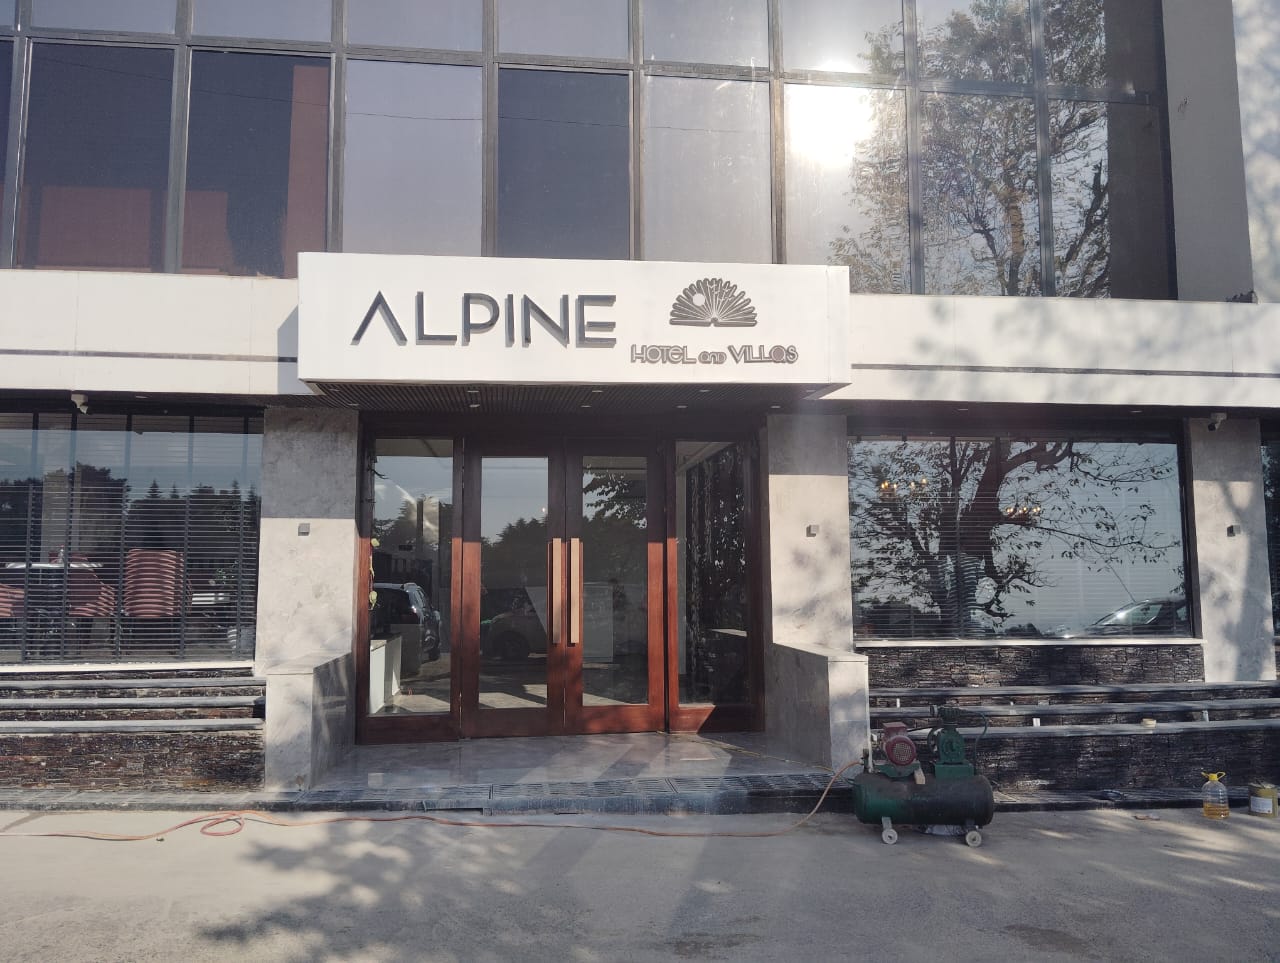 Alpine Hotel And Villas